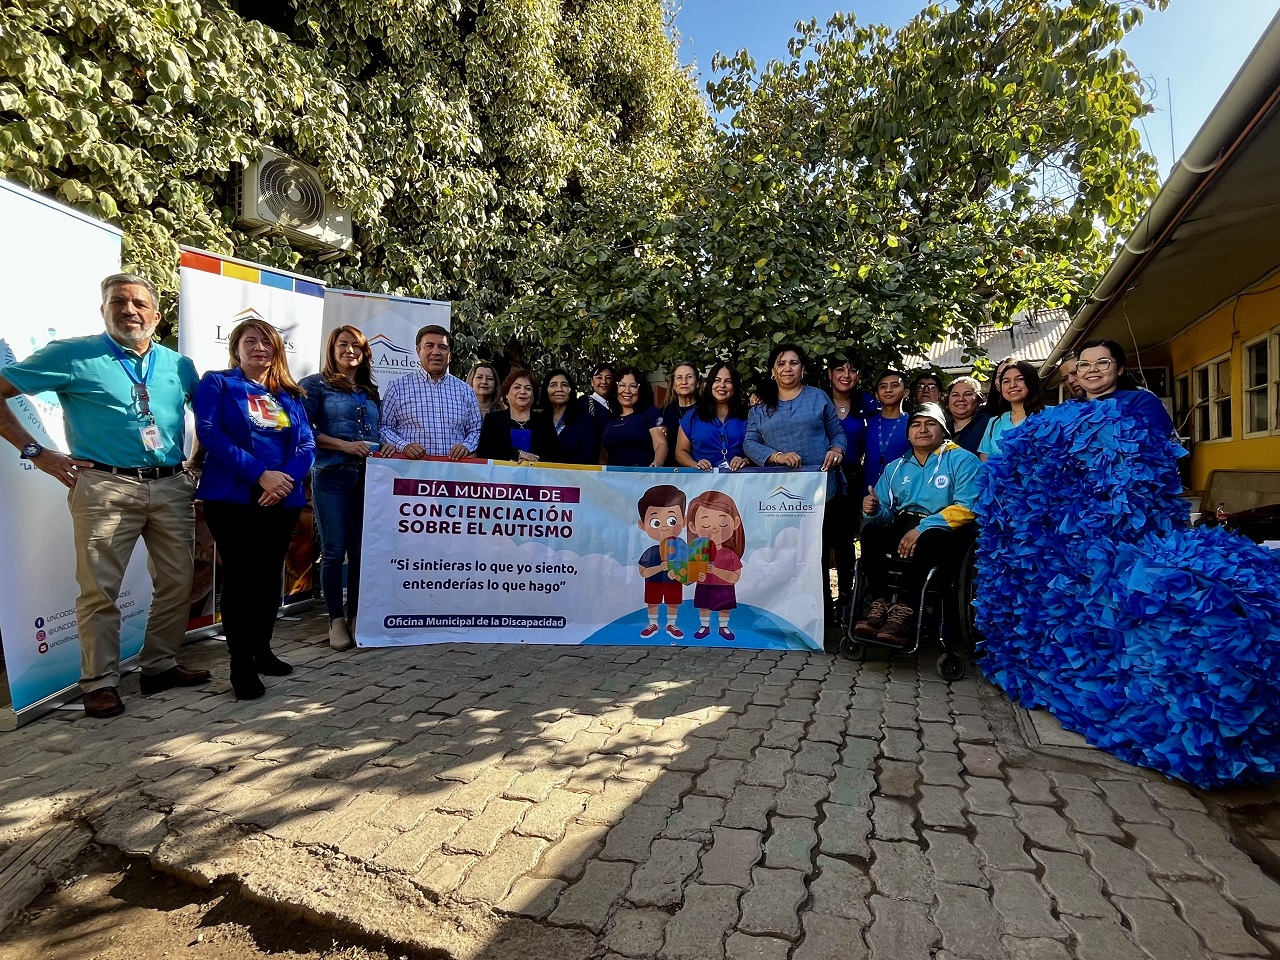 LOS ANDES: Los Andes conmemorará el Día Mundial de Concienciación de las Personas con Trastorno del Espectro Autista con una gran caravana